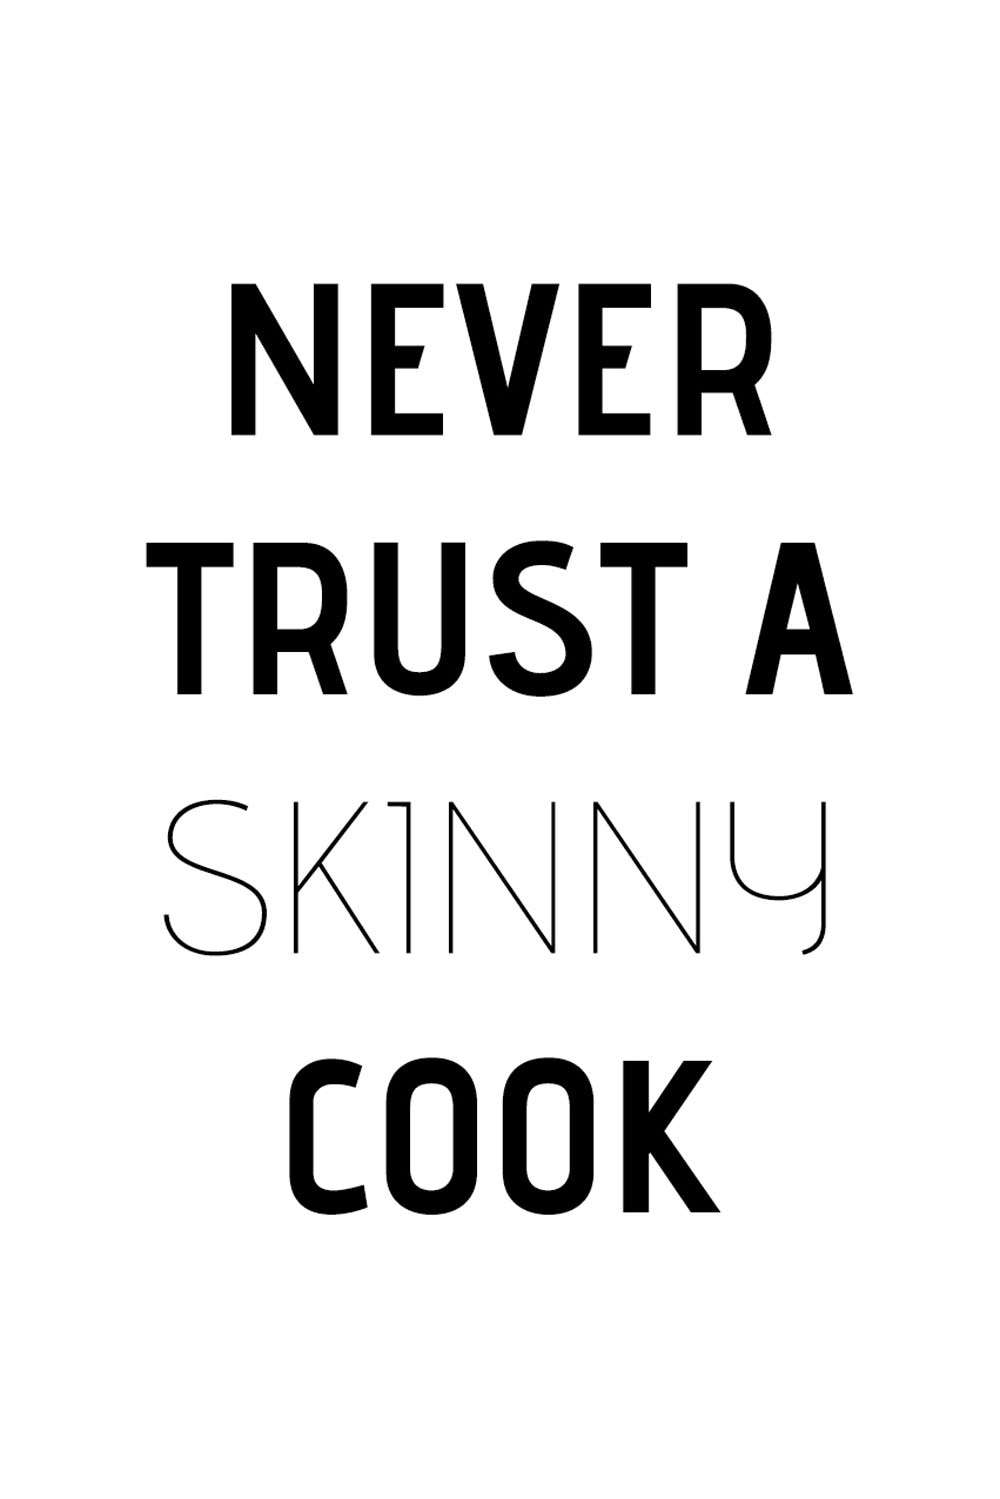 queence Wanddekoobjekt »Never trust a skinny cook«, Schriftzug auf  Stahlblech kaufen bei OTTO | Wandobjekte